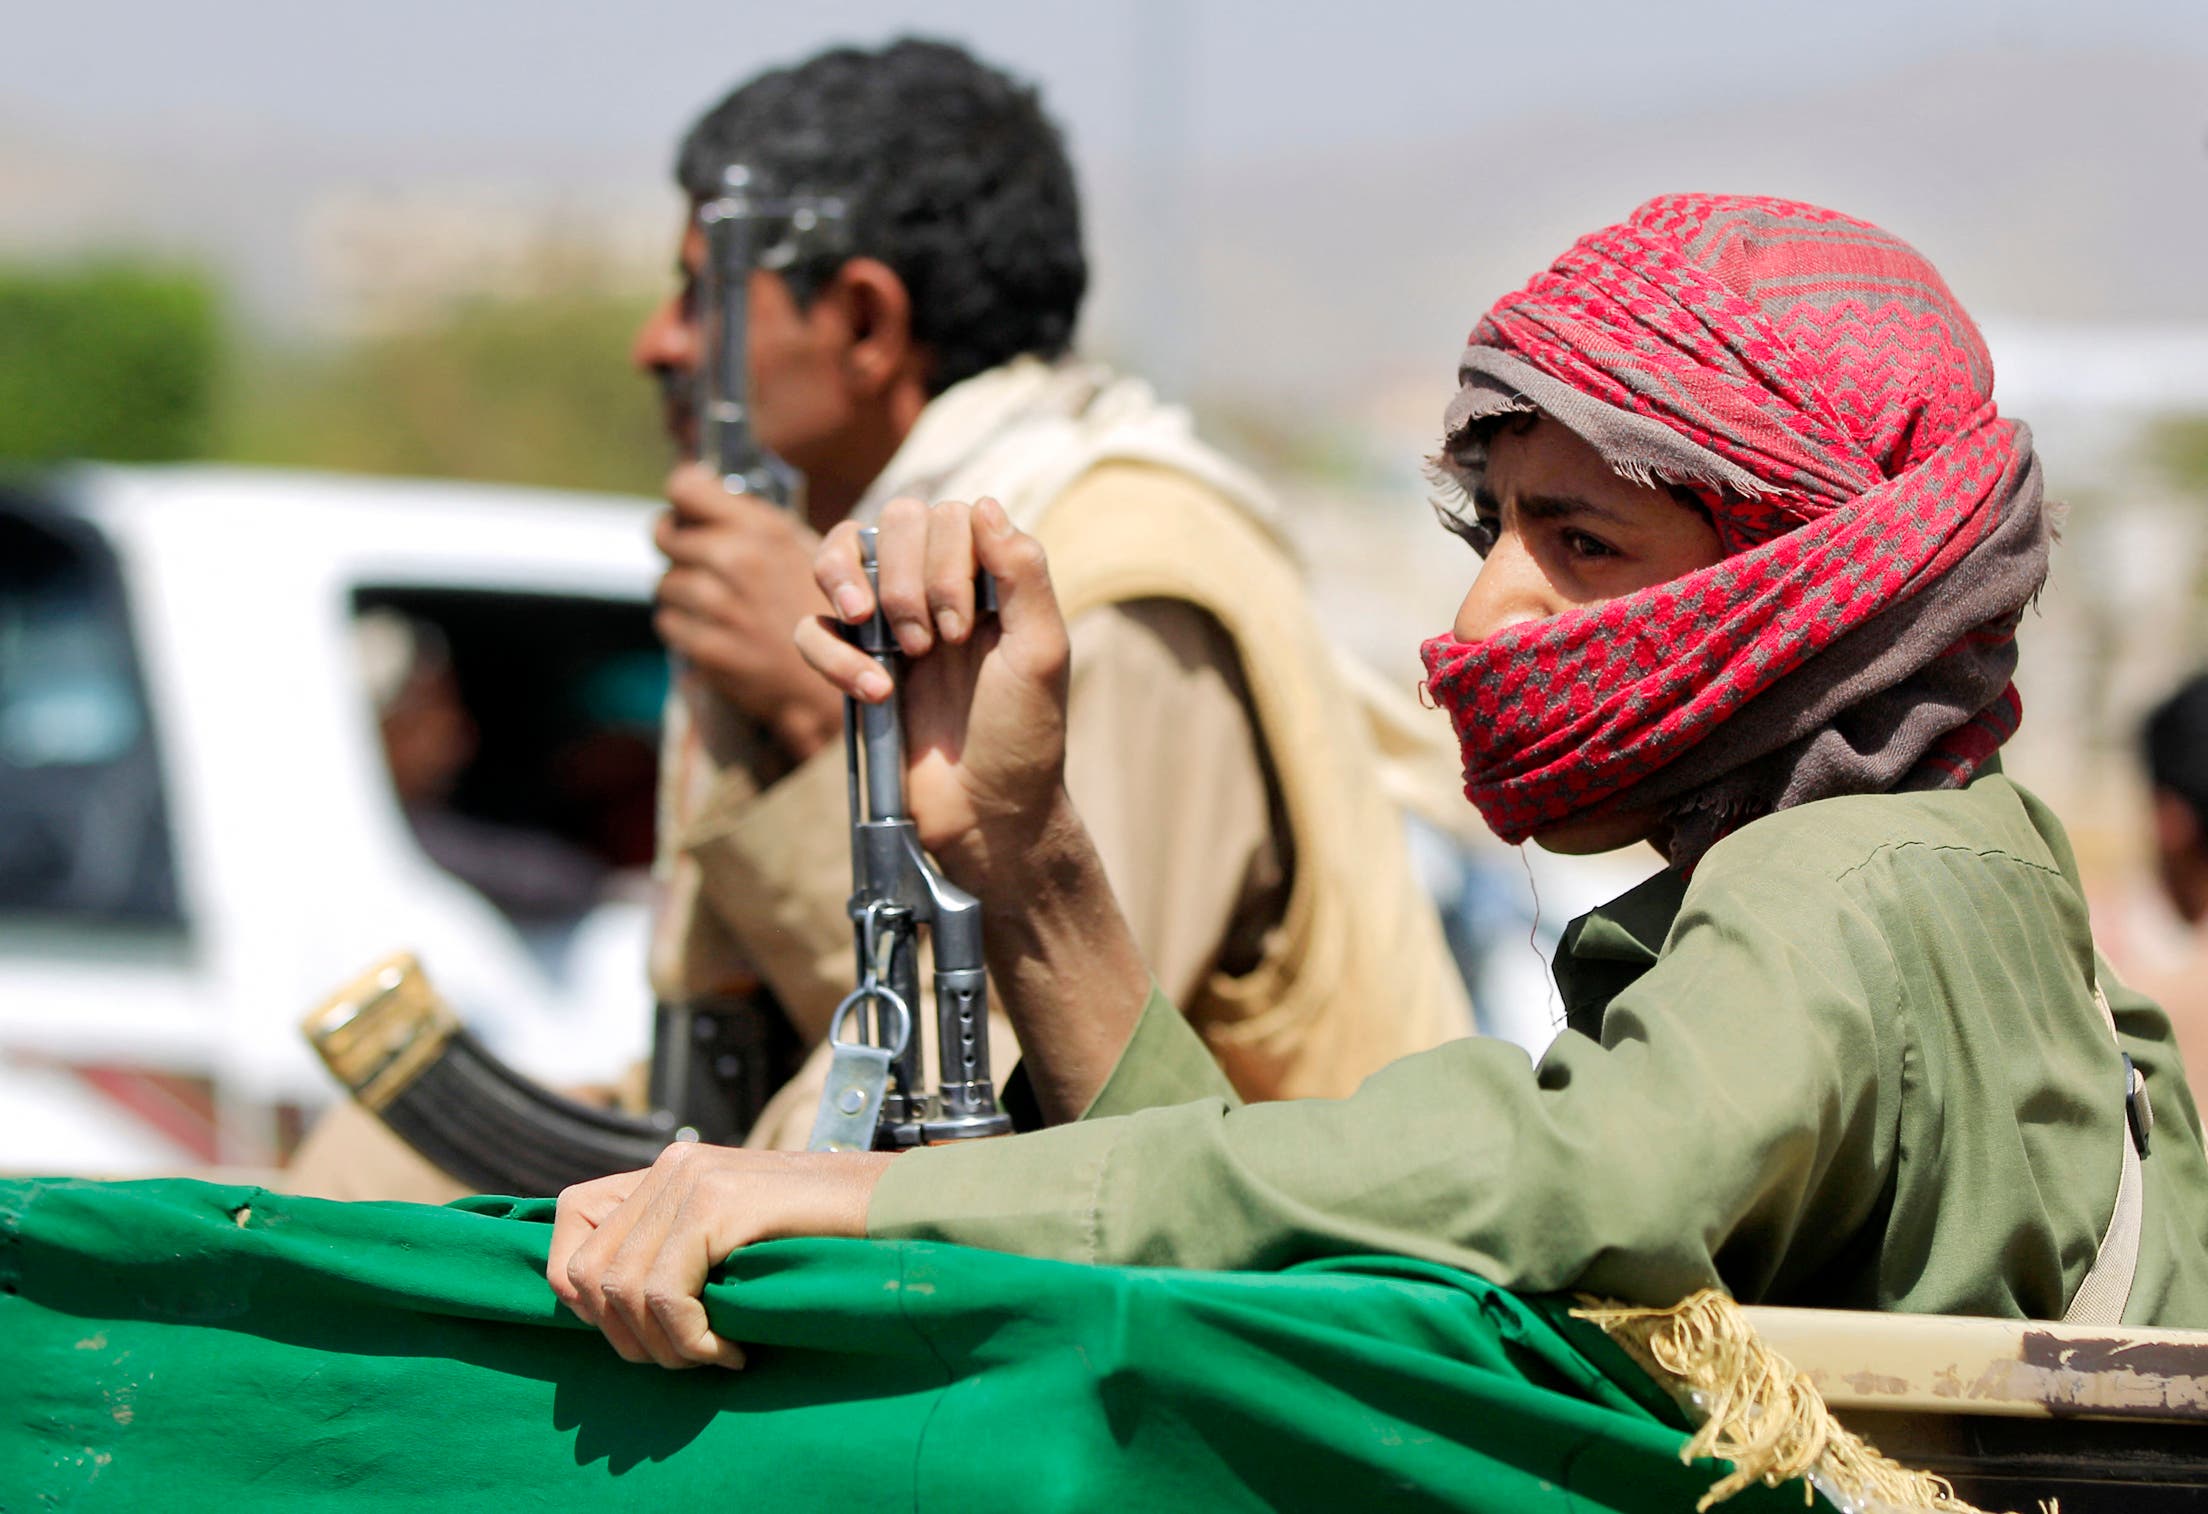 شاحنة حوثية تنقل قتلى الميليشيات من مأرب إلى صنعاء (فرانس برس)